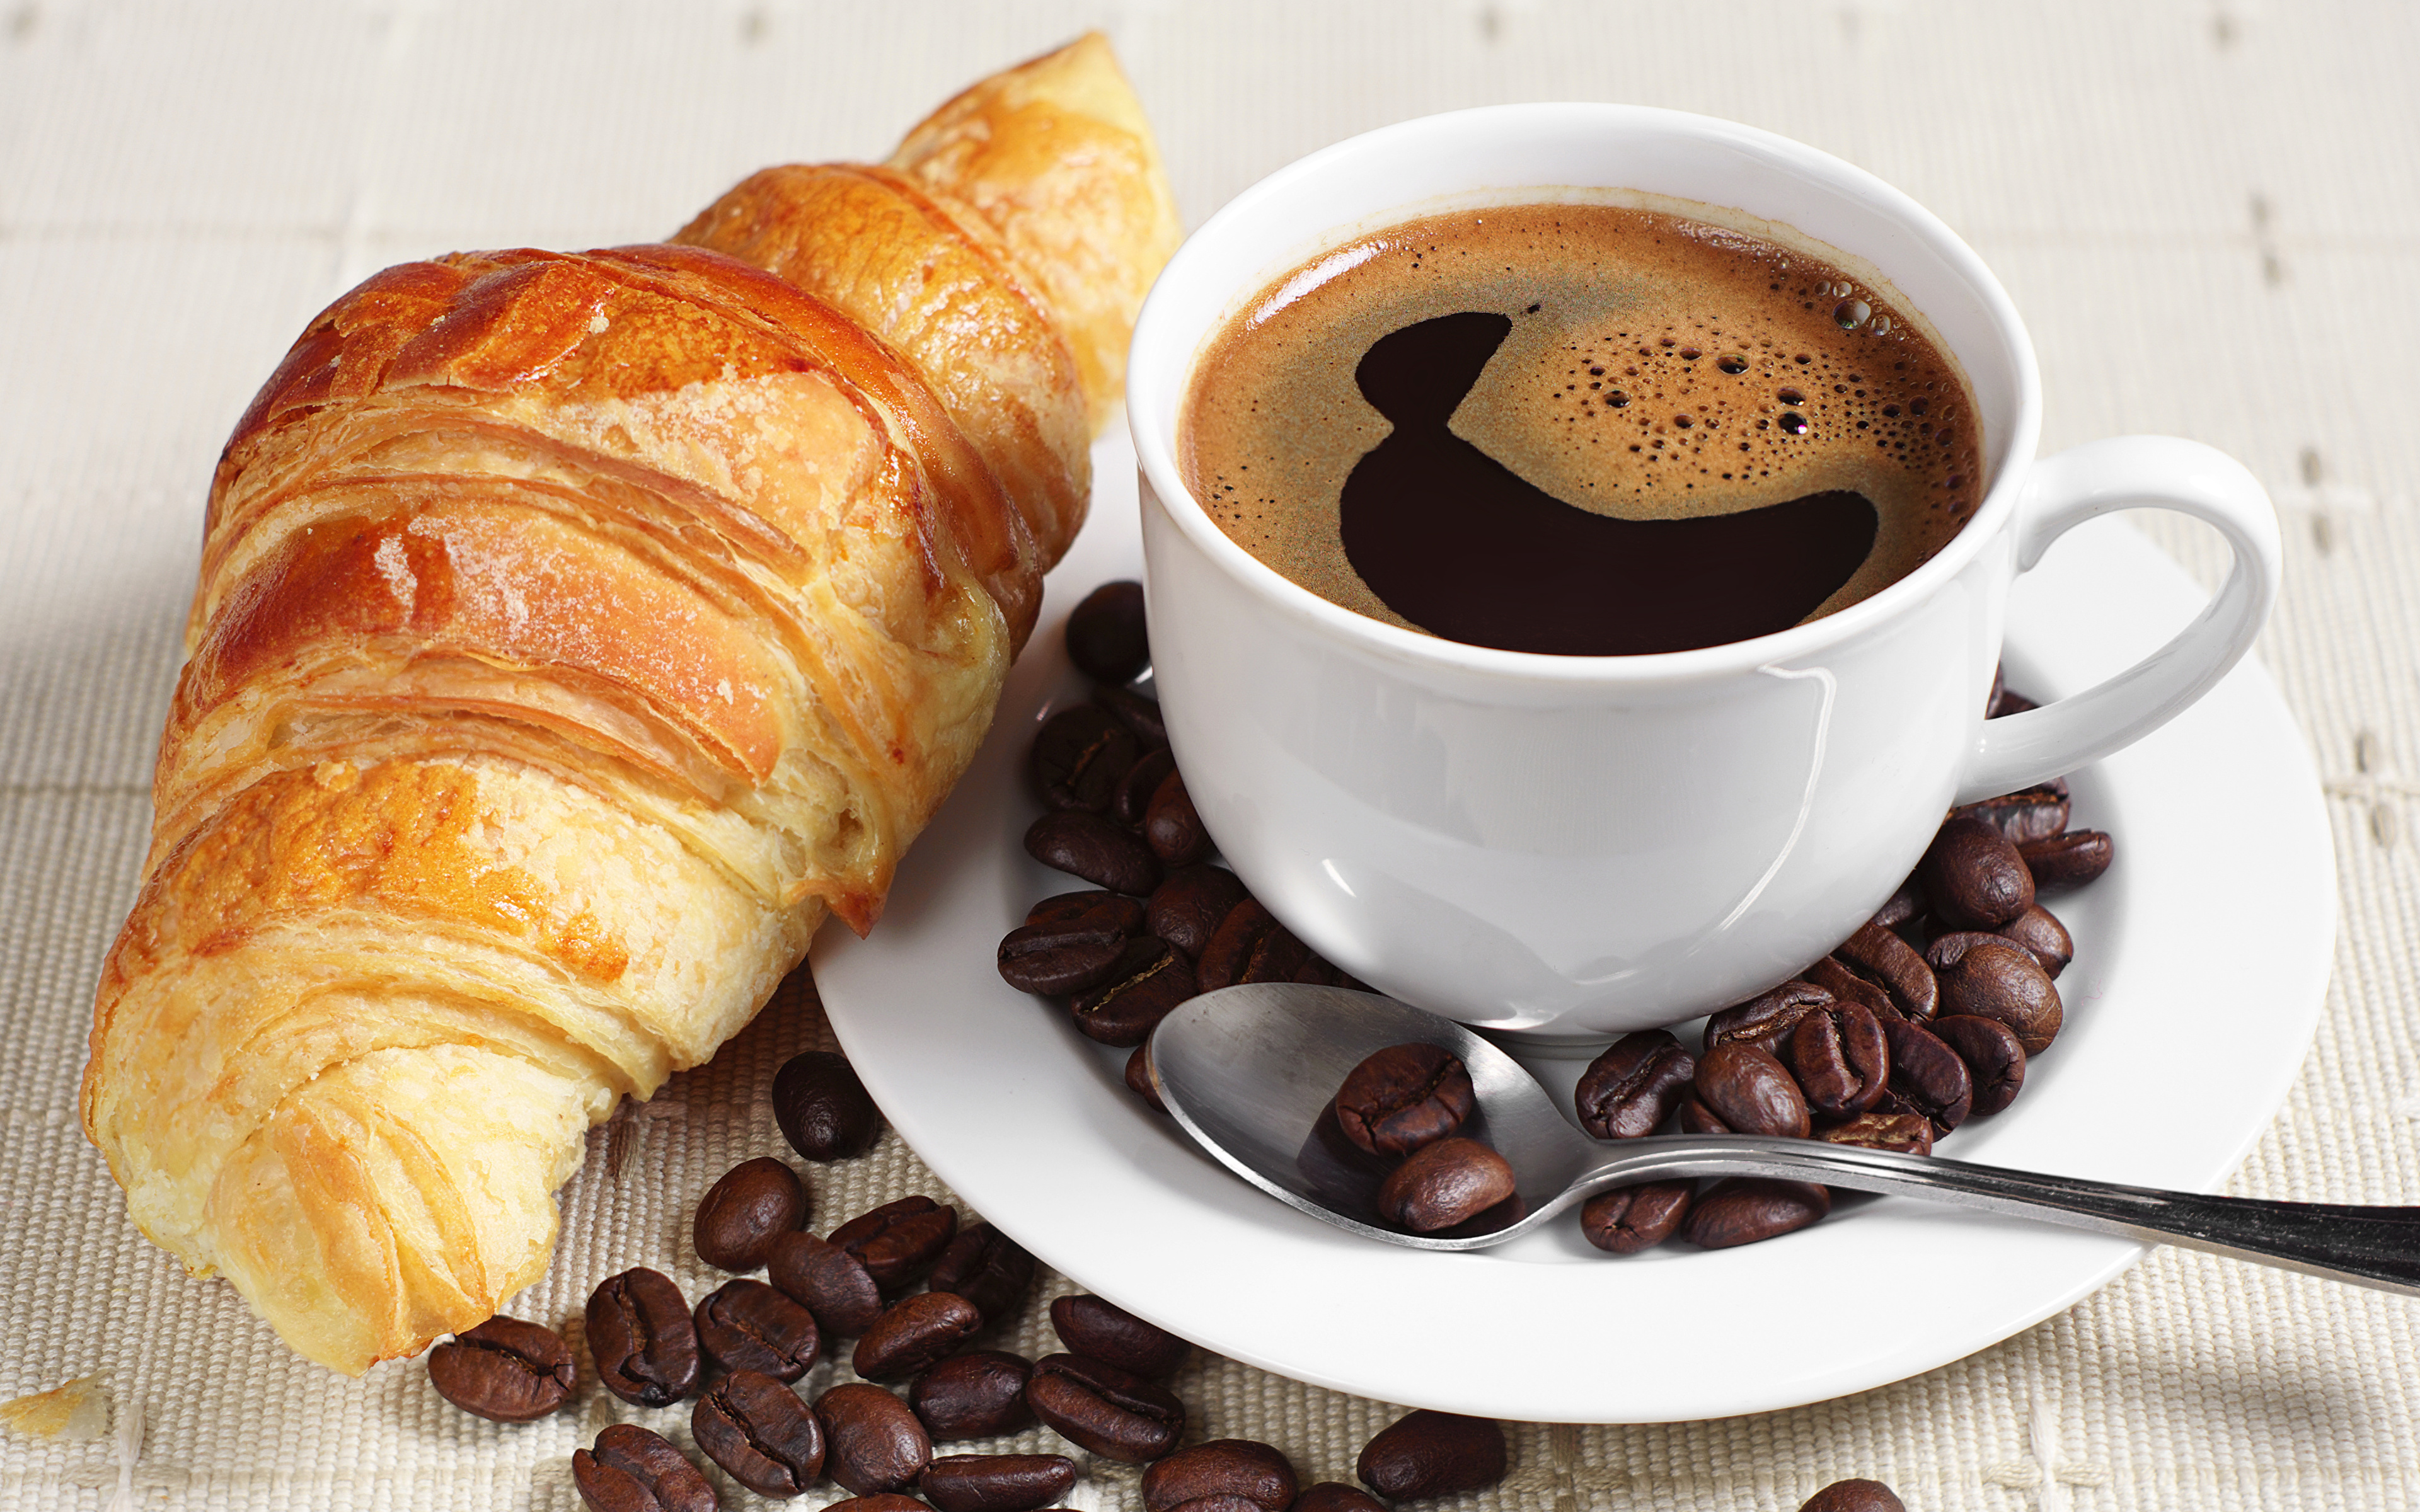 Resultado de imagen para cafe y croissant